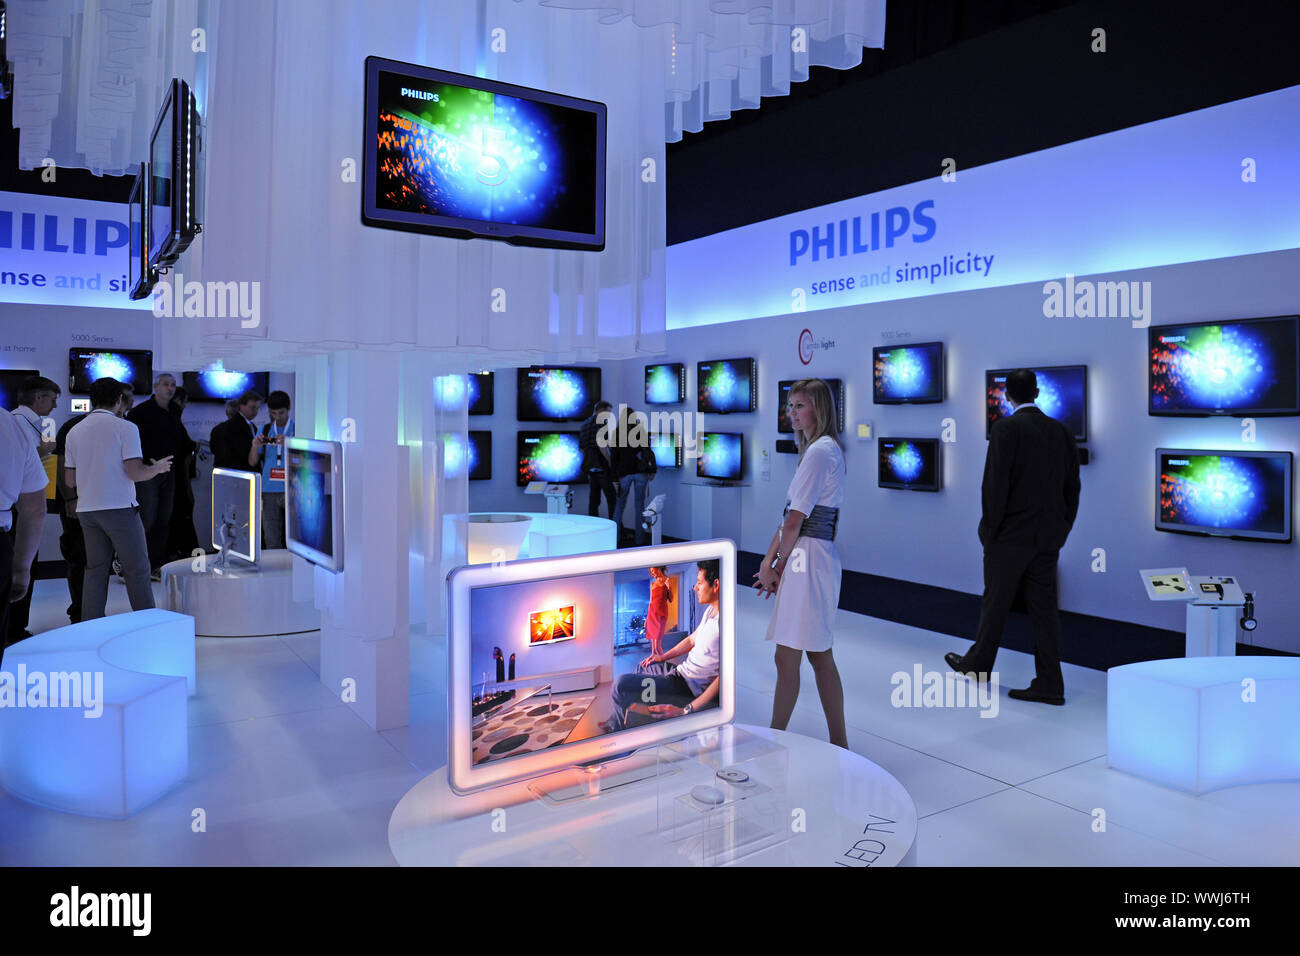 Les écrans de télévision Philips à l'IFA 2009 Exposition internationale de l'électronique grand public à Berlin Banque D'Images